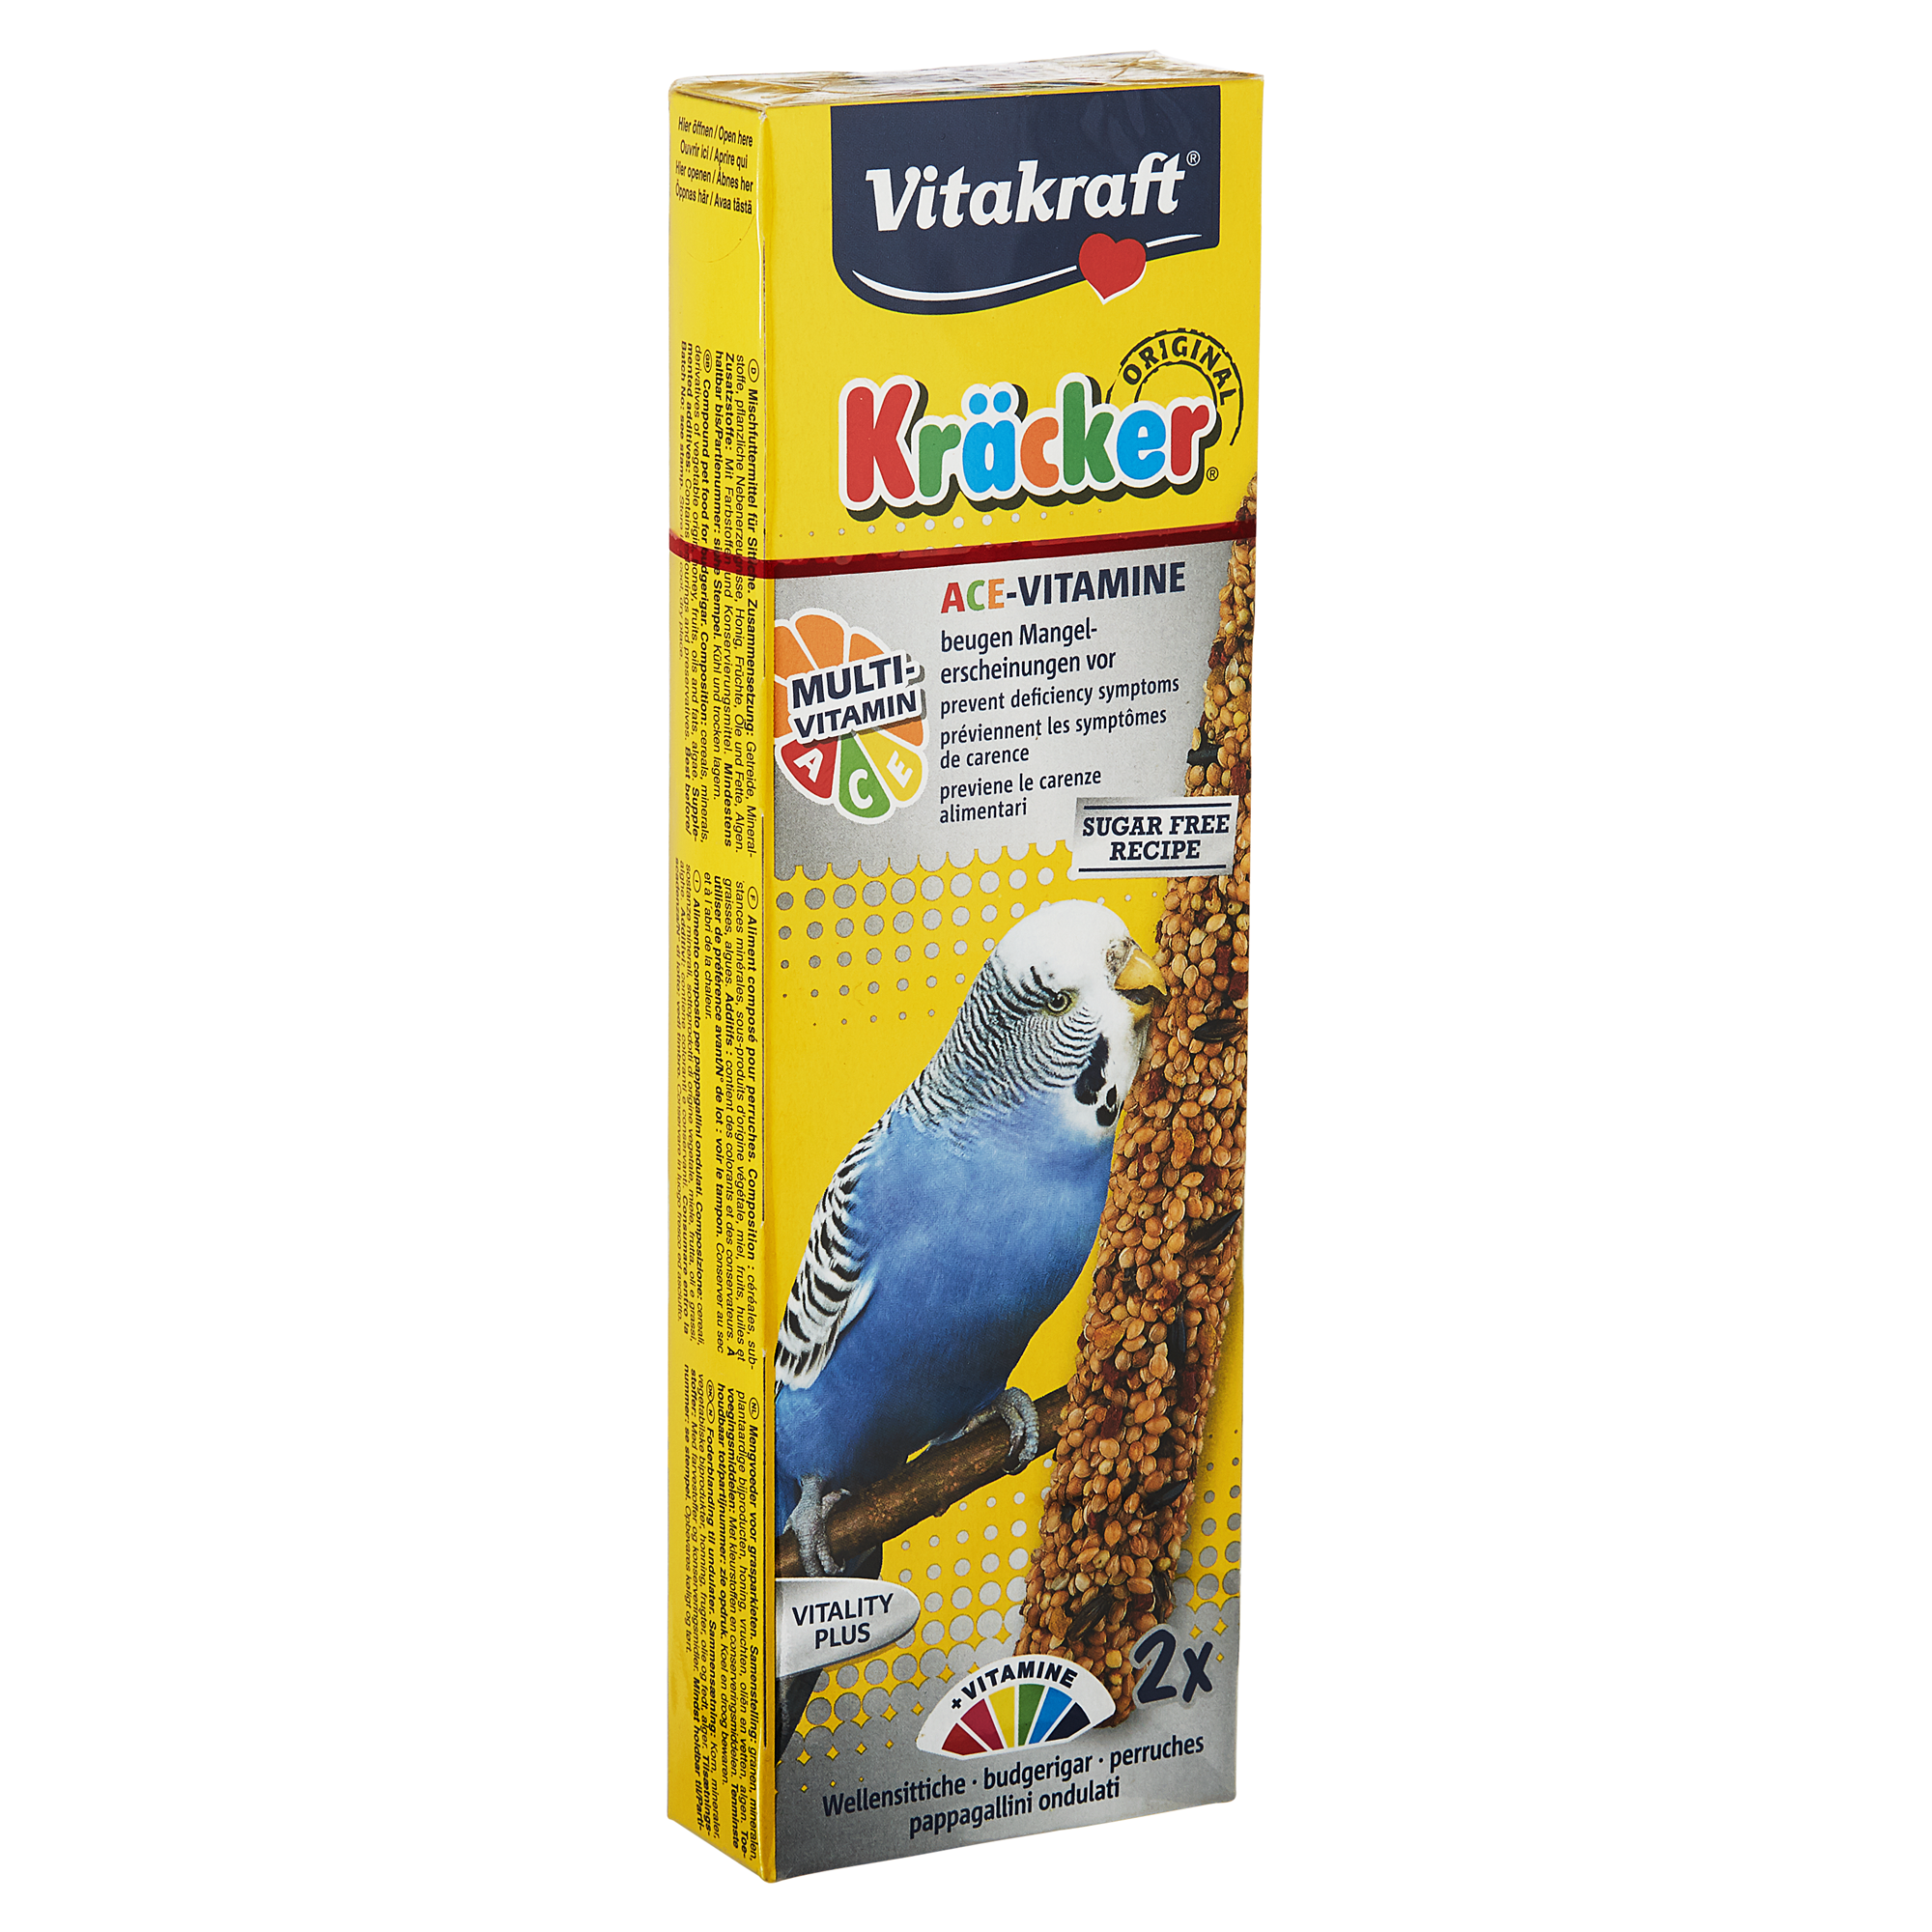 Vogelfutter Kräcker® Original Multivitamin 2 Stück für Wellensittiche + product picture